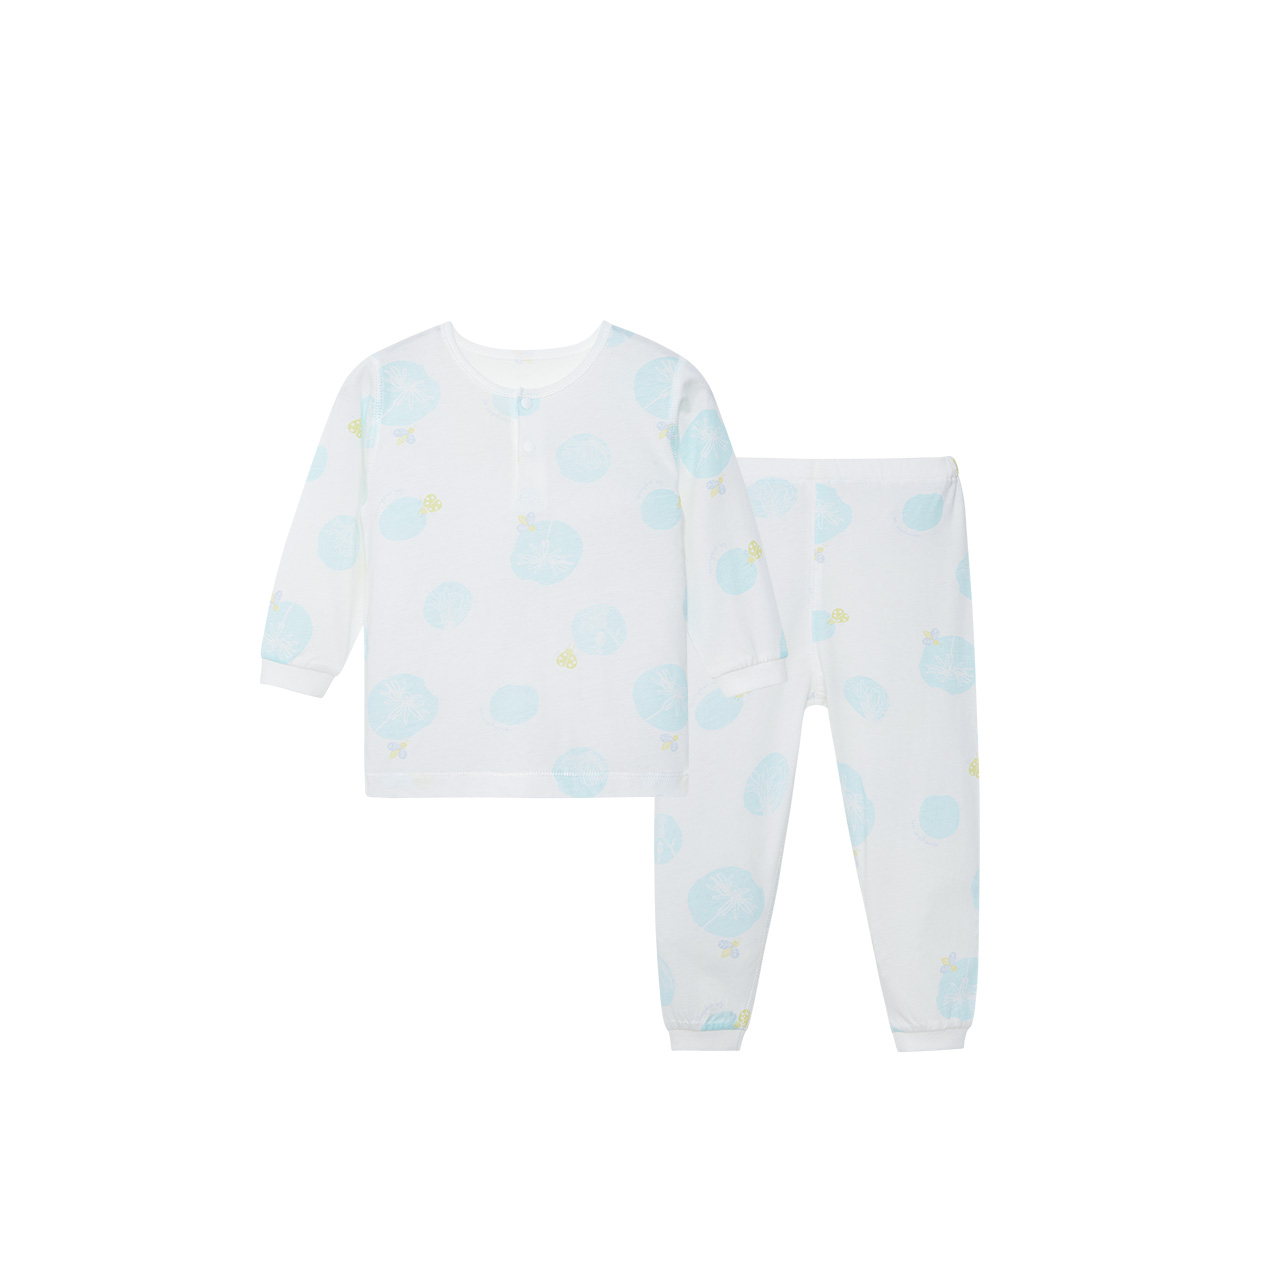 丽婴房宝宝睡衣套装 天丝超薄婴幼儿空调服舒适透气家居服儿童夏